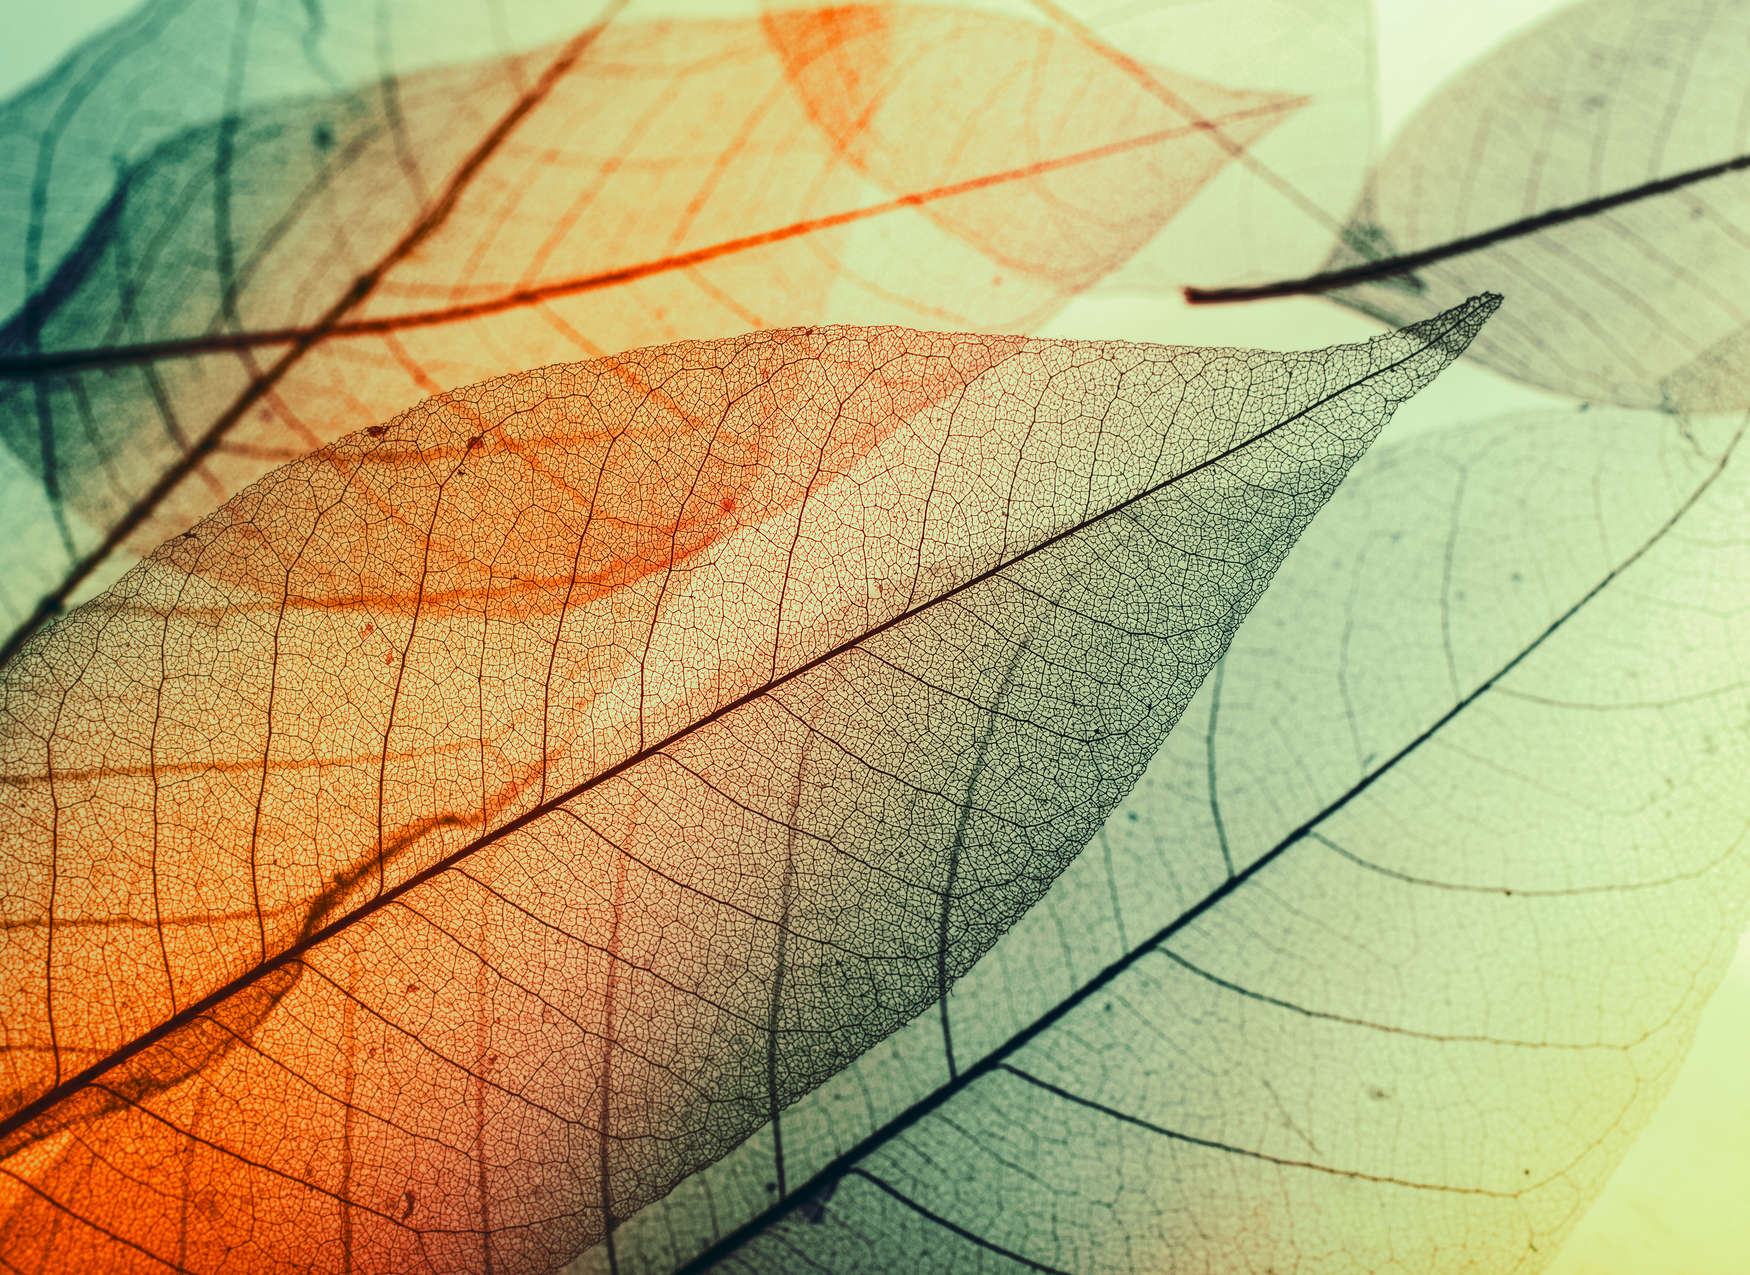             Carta da parati con design a foglie - Verde, arancione, nero
        